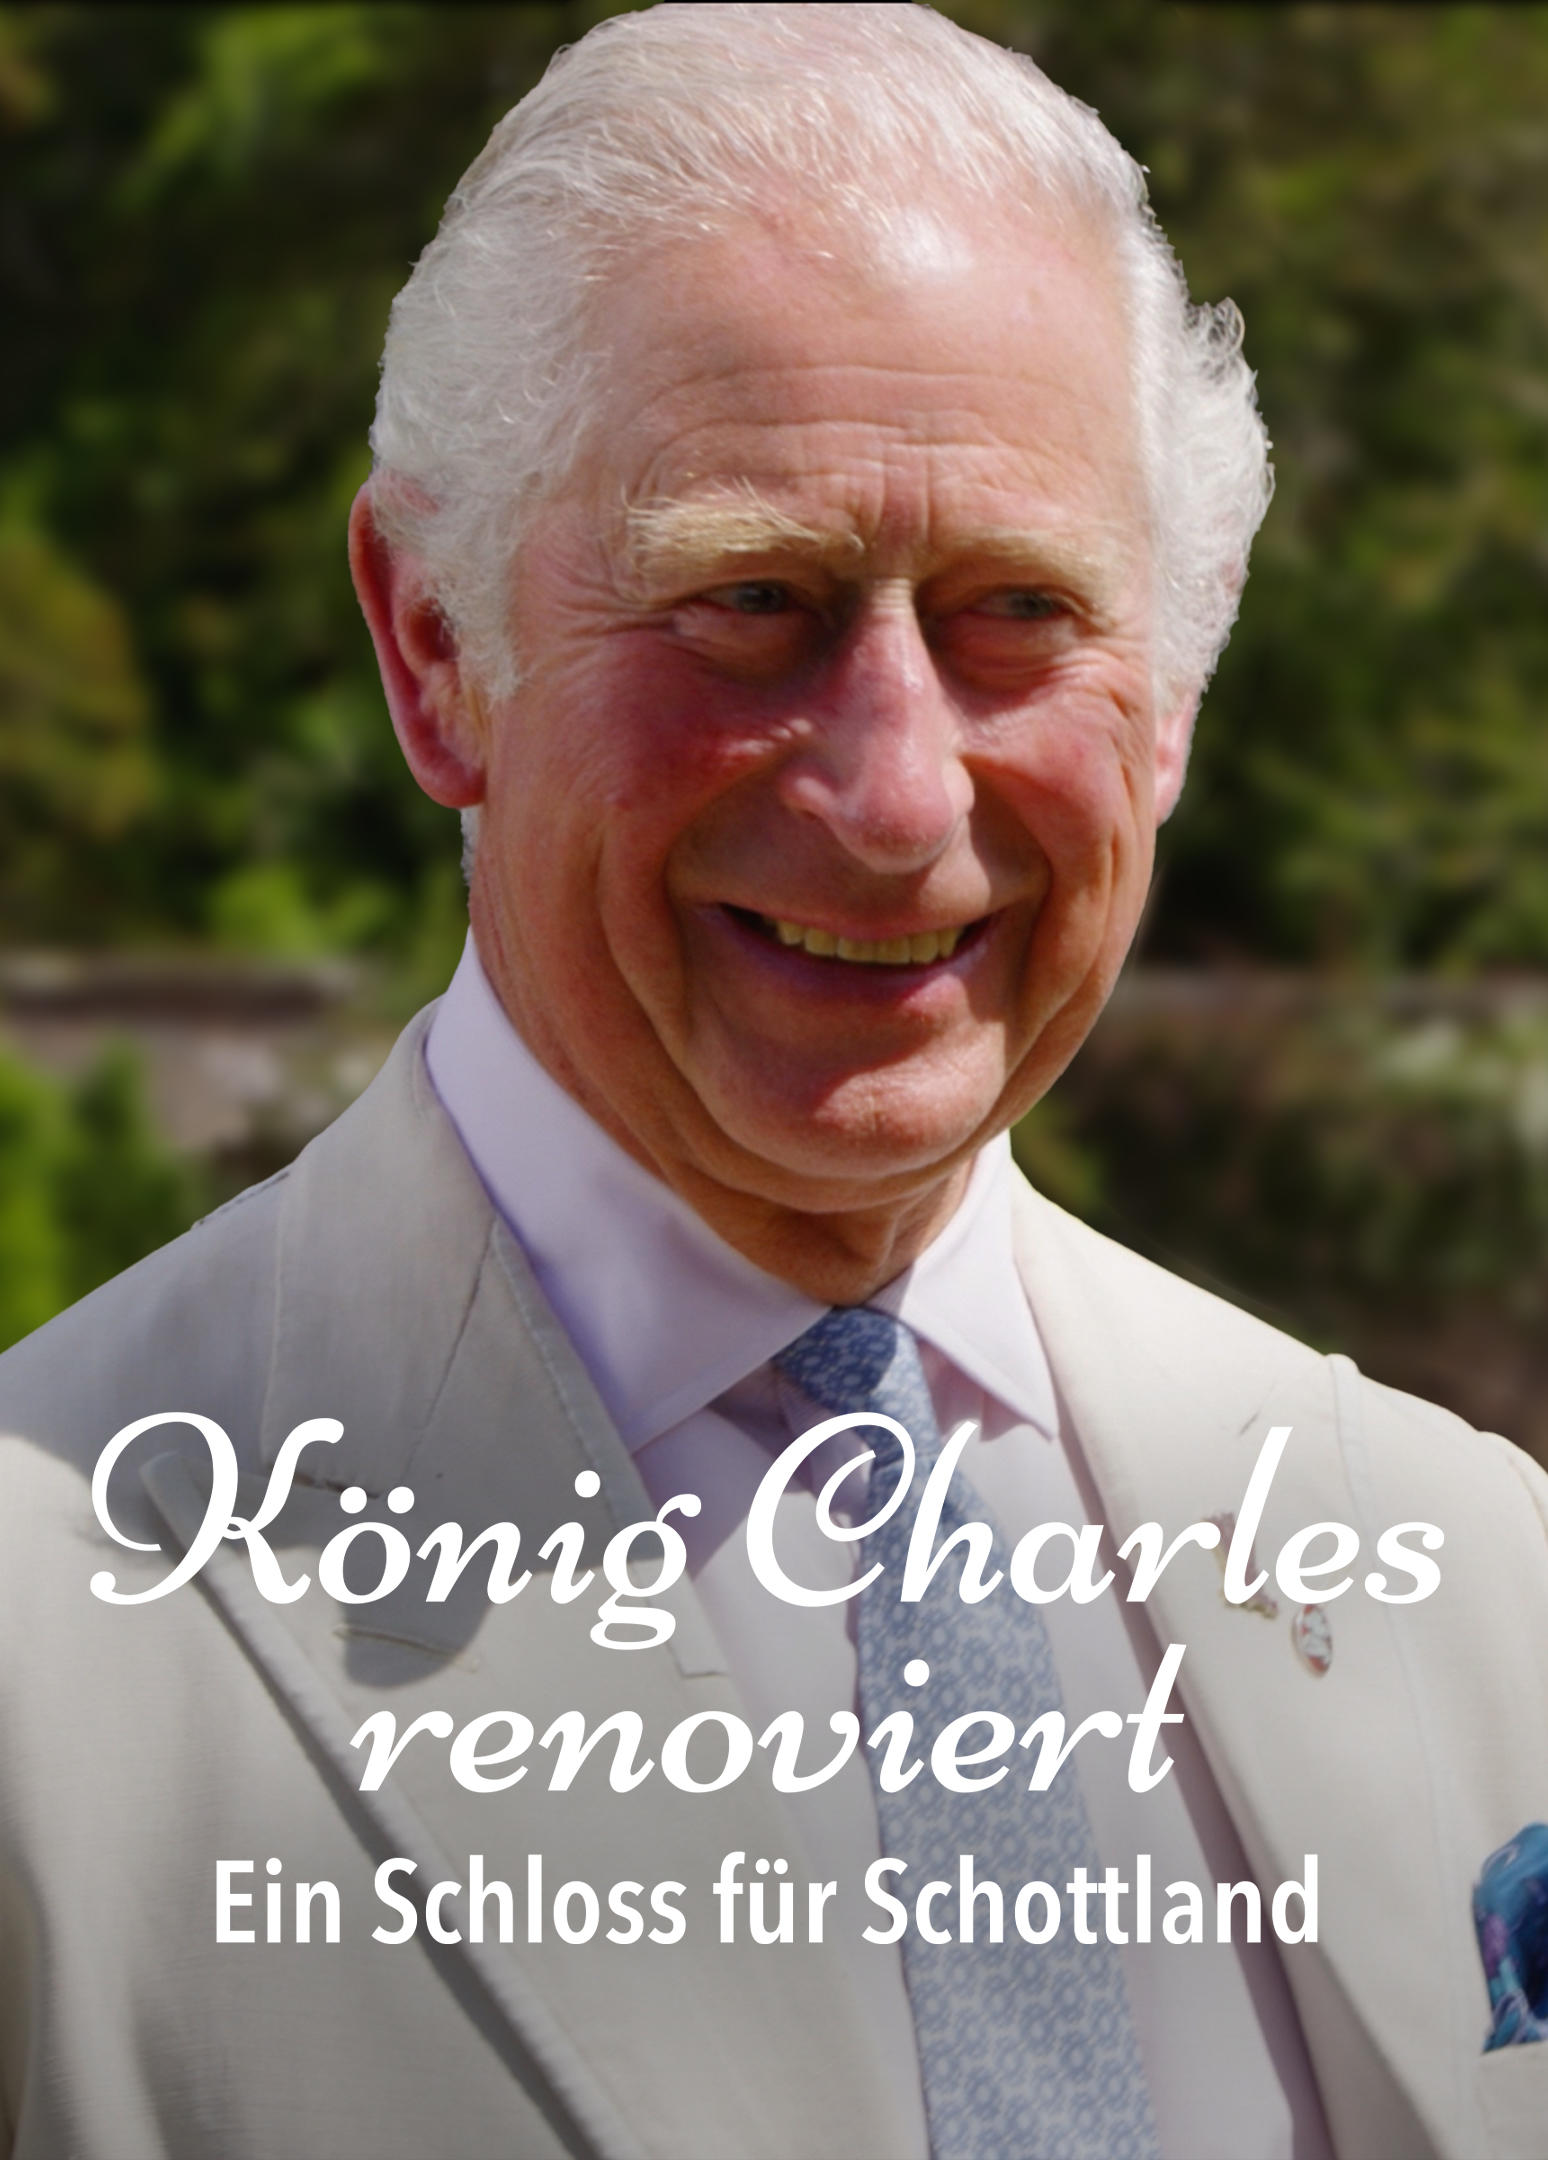 König Charles renoviert - Ein Schloss für Schottland